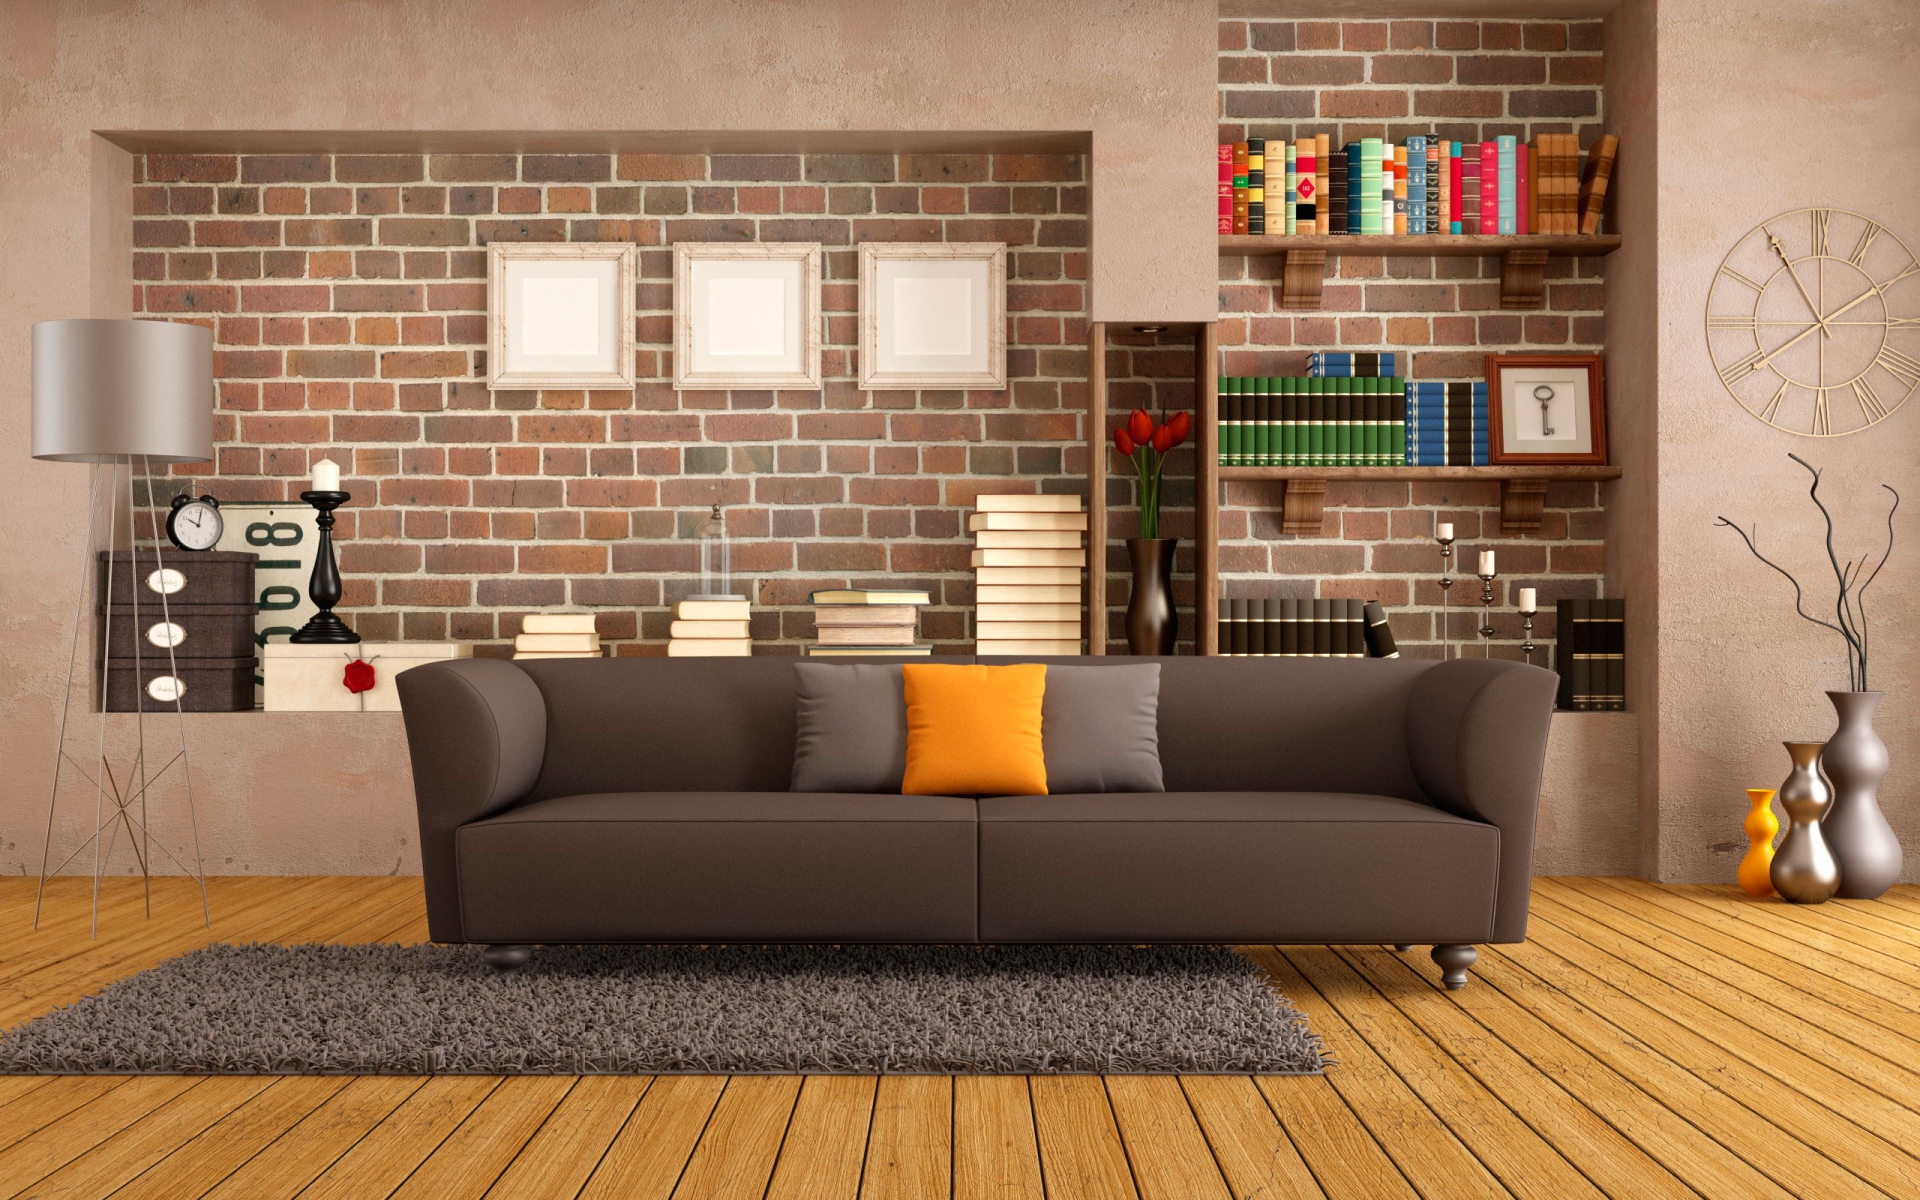 Interior, living room, sofa, rug, wall, books, furniture, wooden floor, wallpaper of good quality, интерьер, гостиная, диван, коврик, стена, книги, мебель, деревянный пол, обои хорошего качества